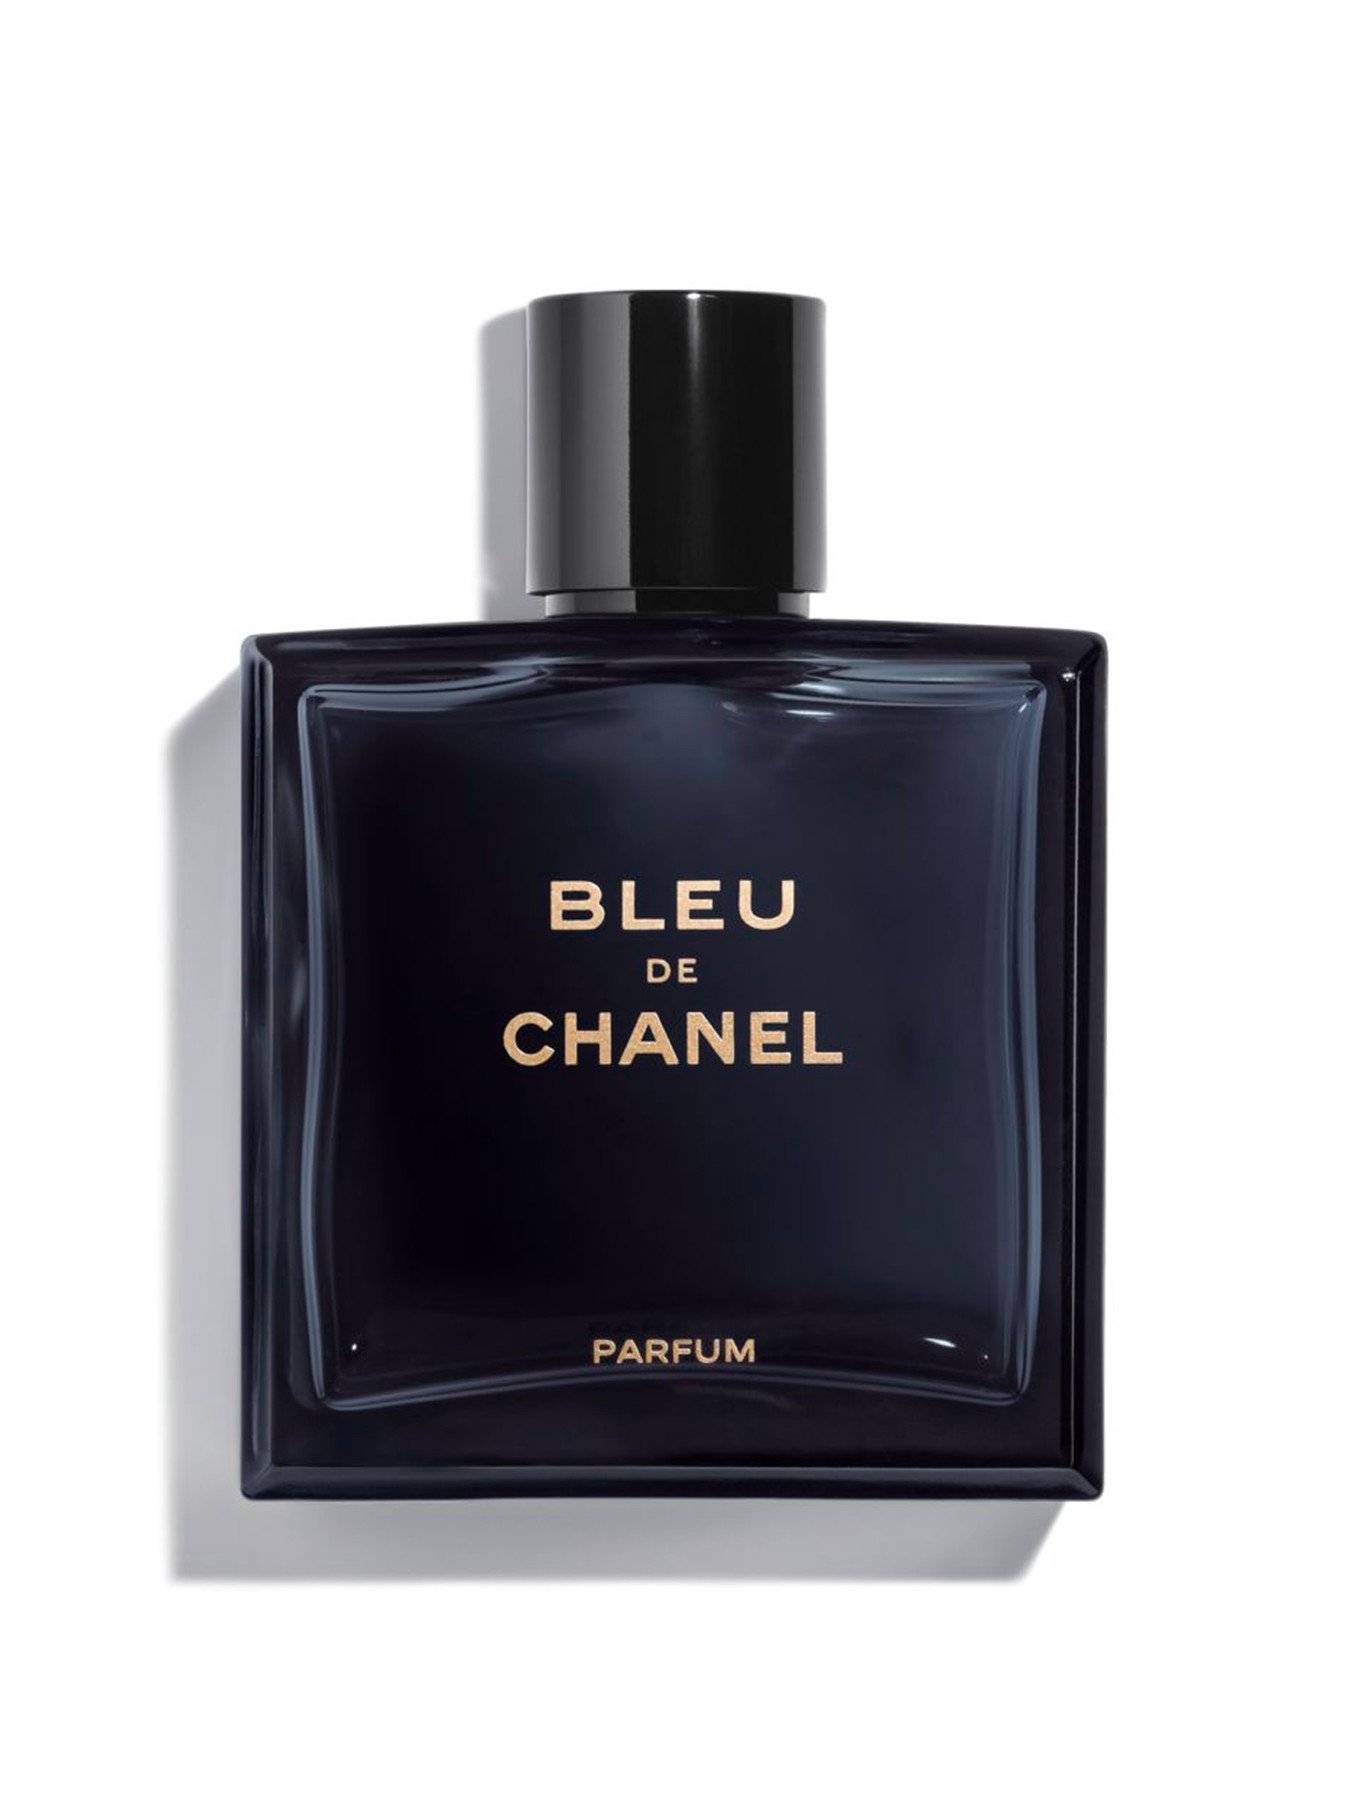 Bleu de Chanel Eau de Parfum – Onyx Fragrance